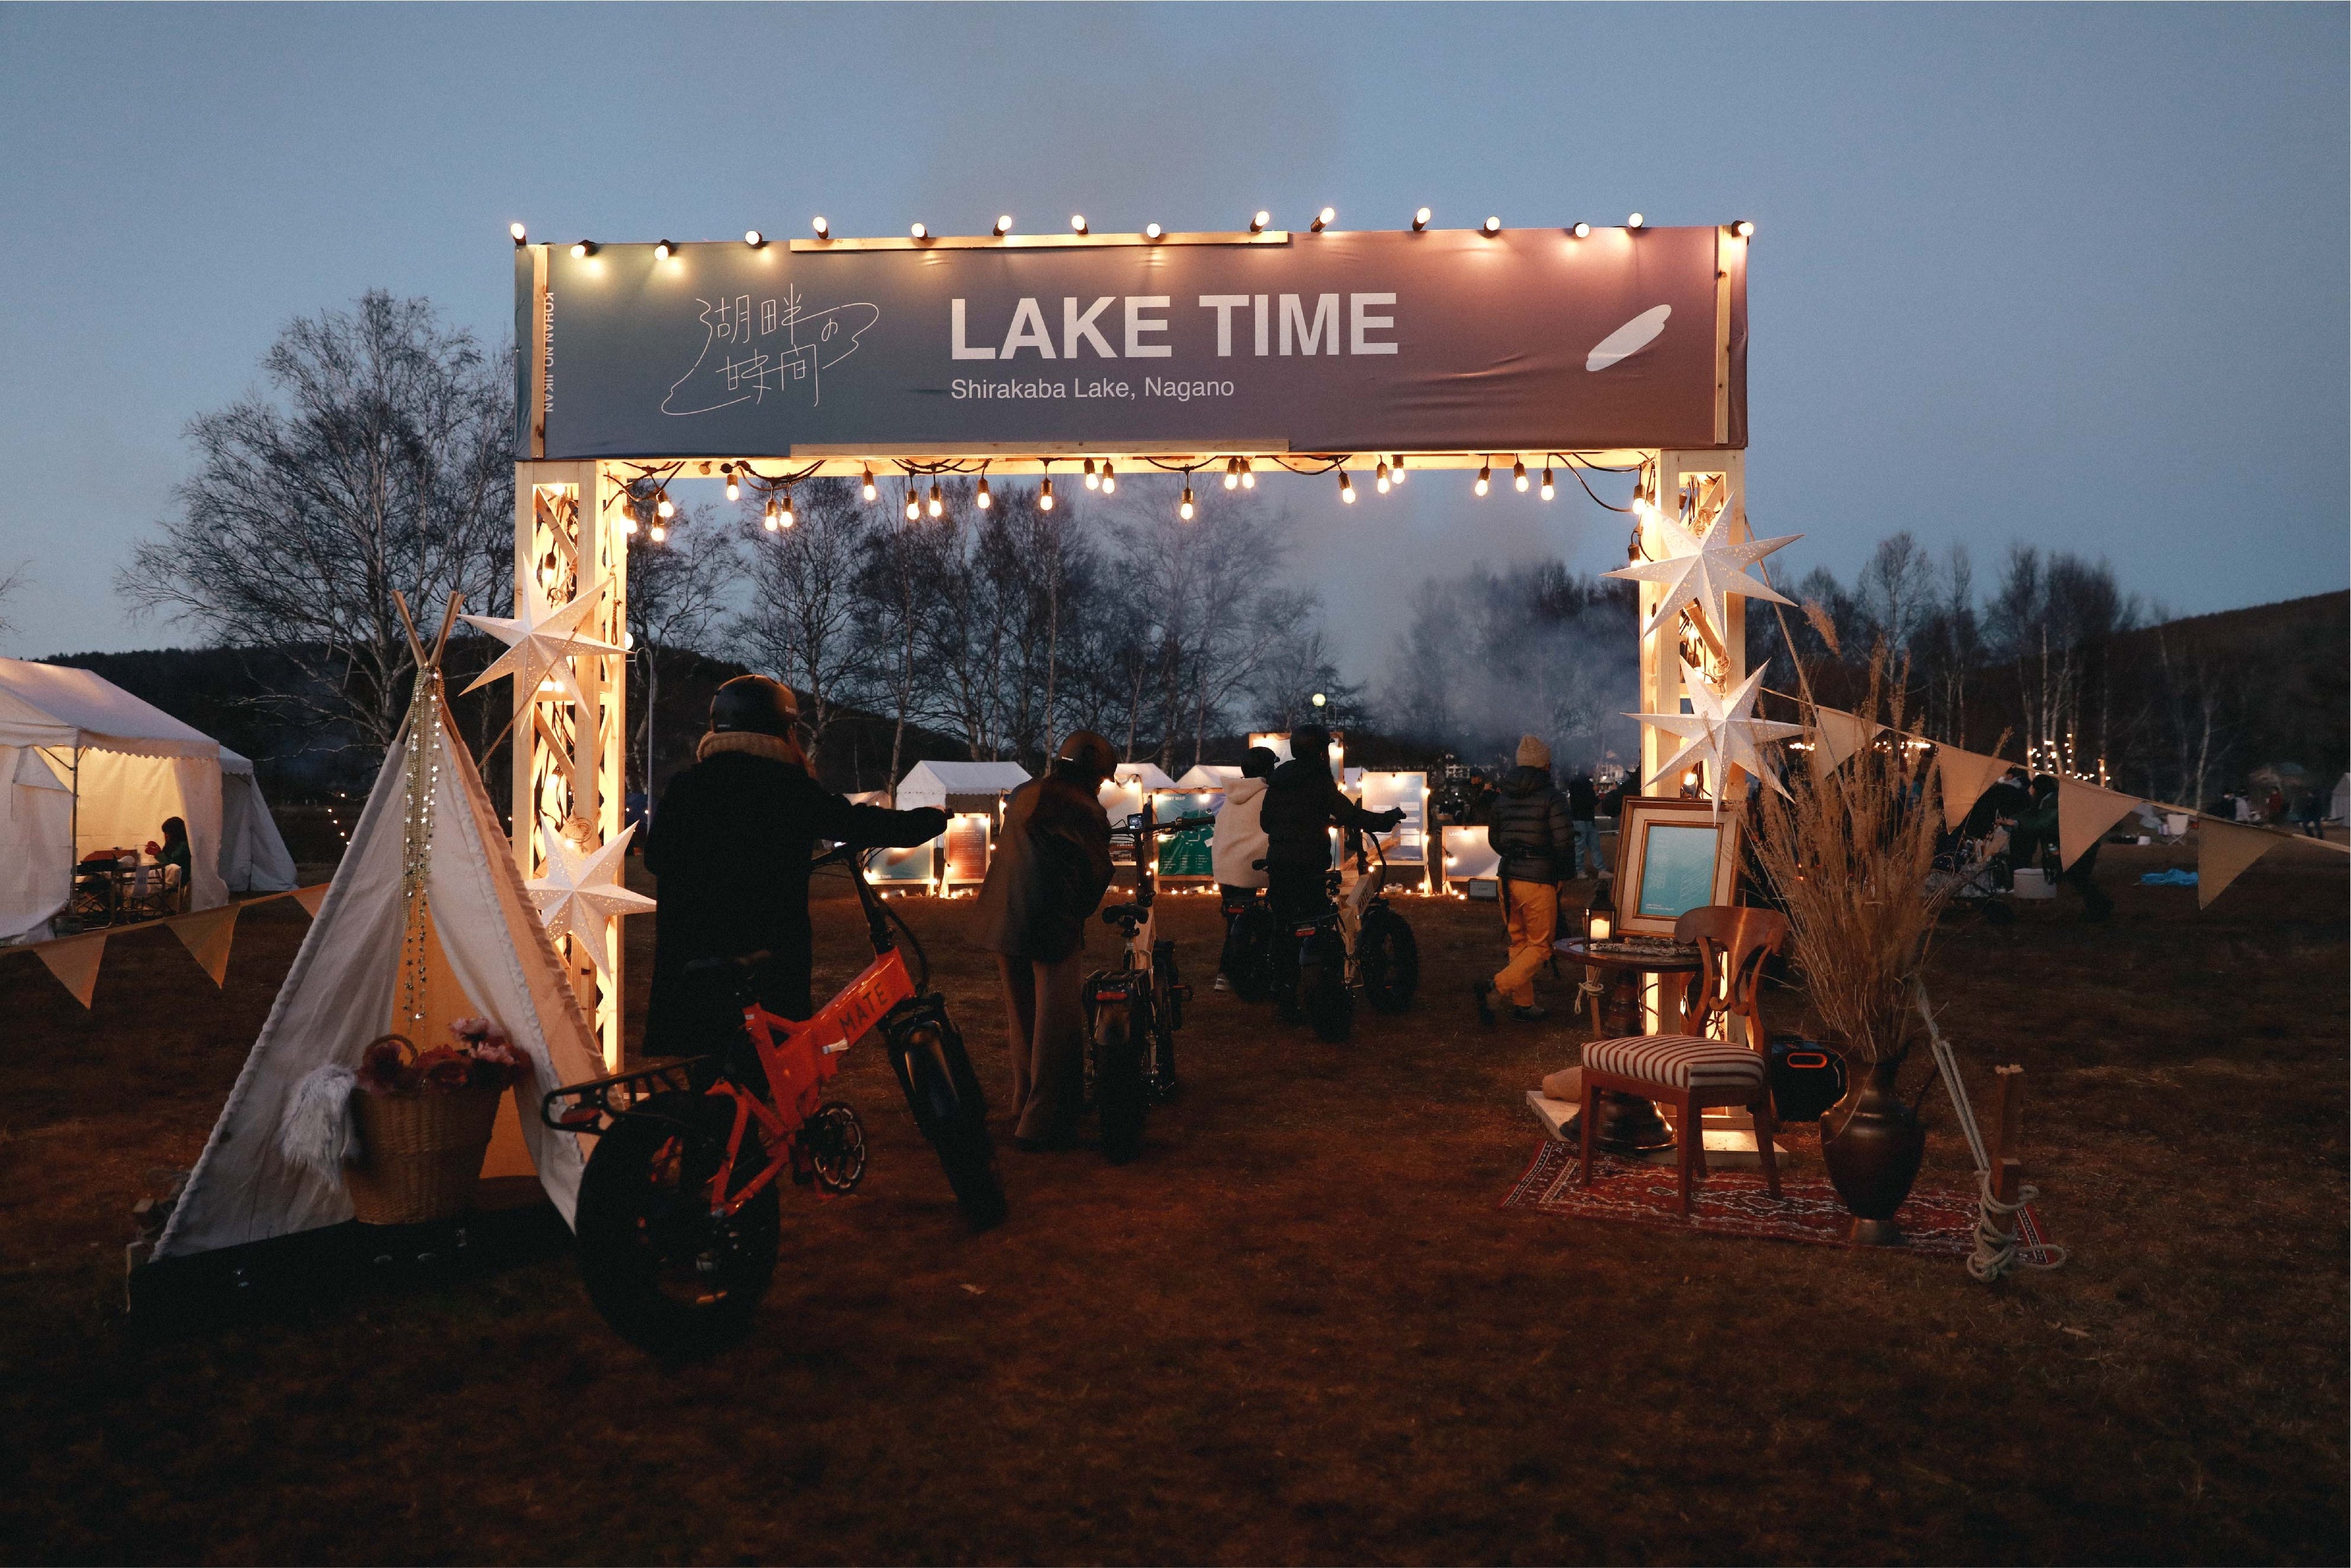 湖畔を楽しむ、白樺湖の “ 湖びらき ”　7月20日・21日『湖畔の時間のなつやすみ』開催